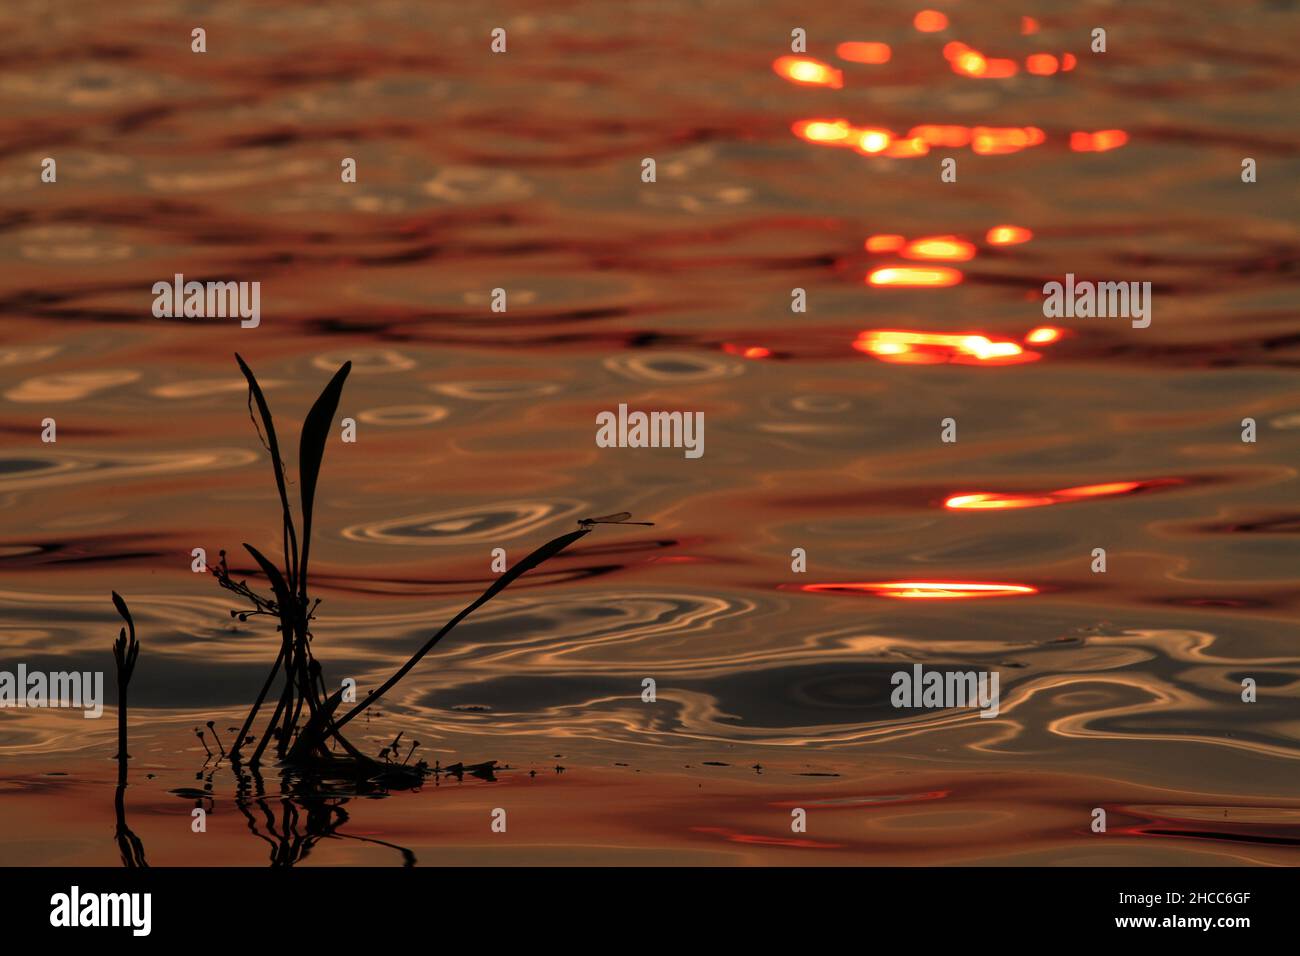 Gros plan de réflexions de libellules sur l'eau au coucher du soleil Banque D'Images